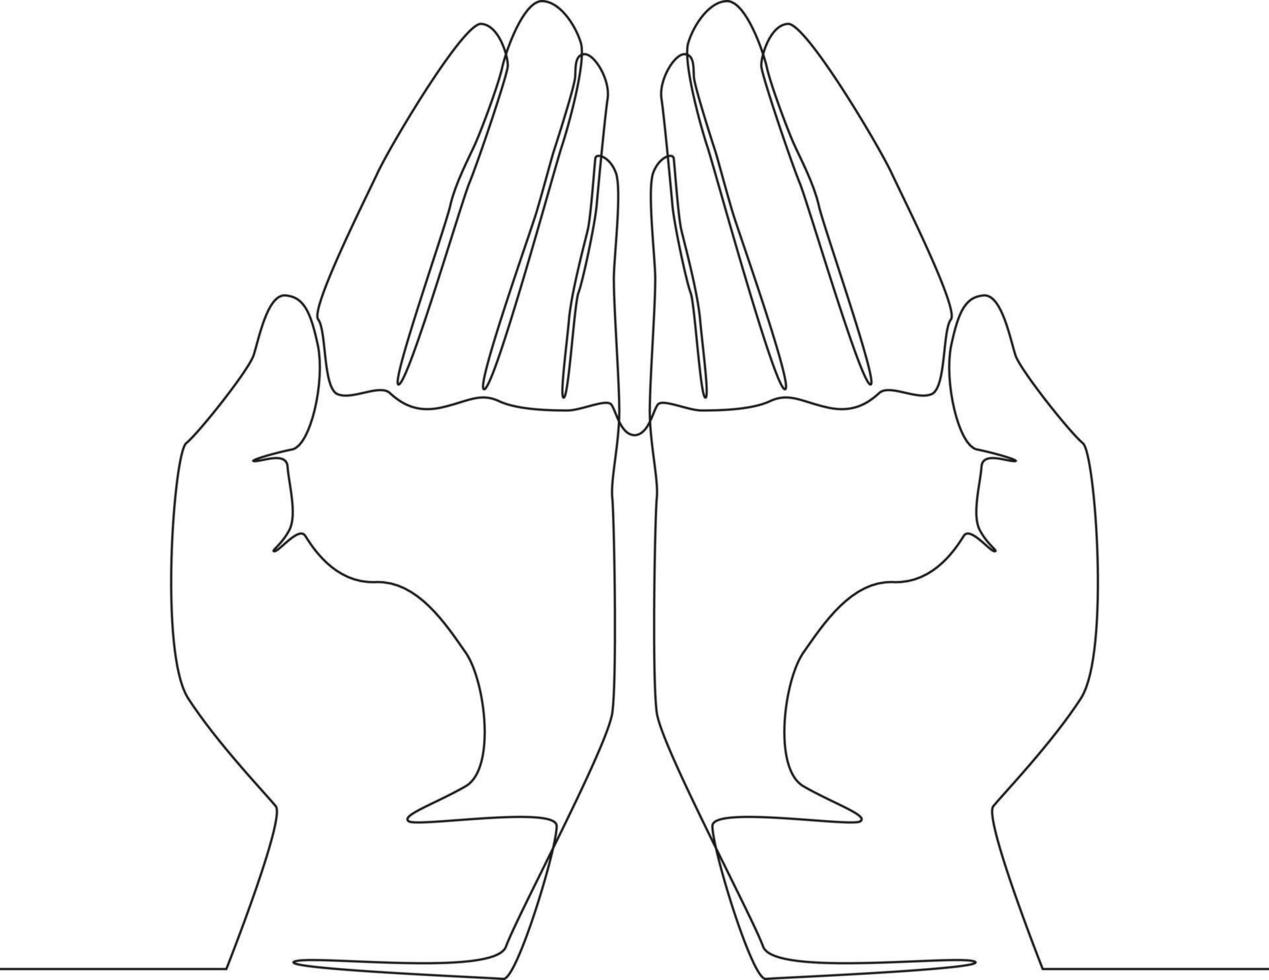 kontinuerlig linjeteckning av bönehänder. vektor illustration.